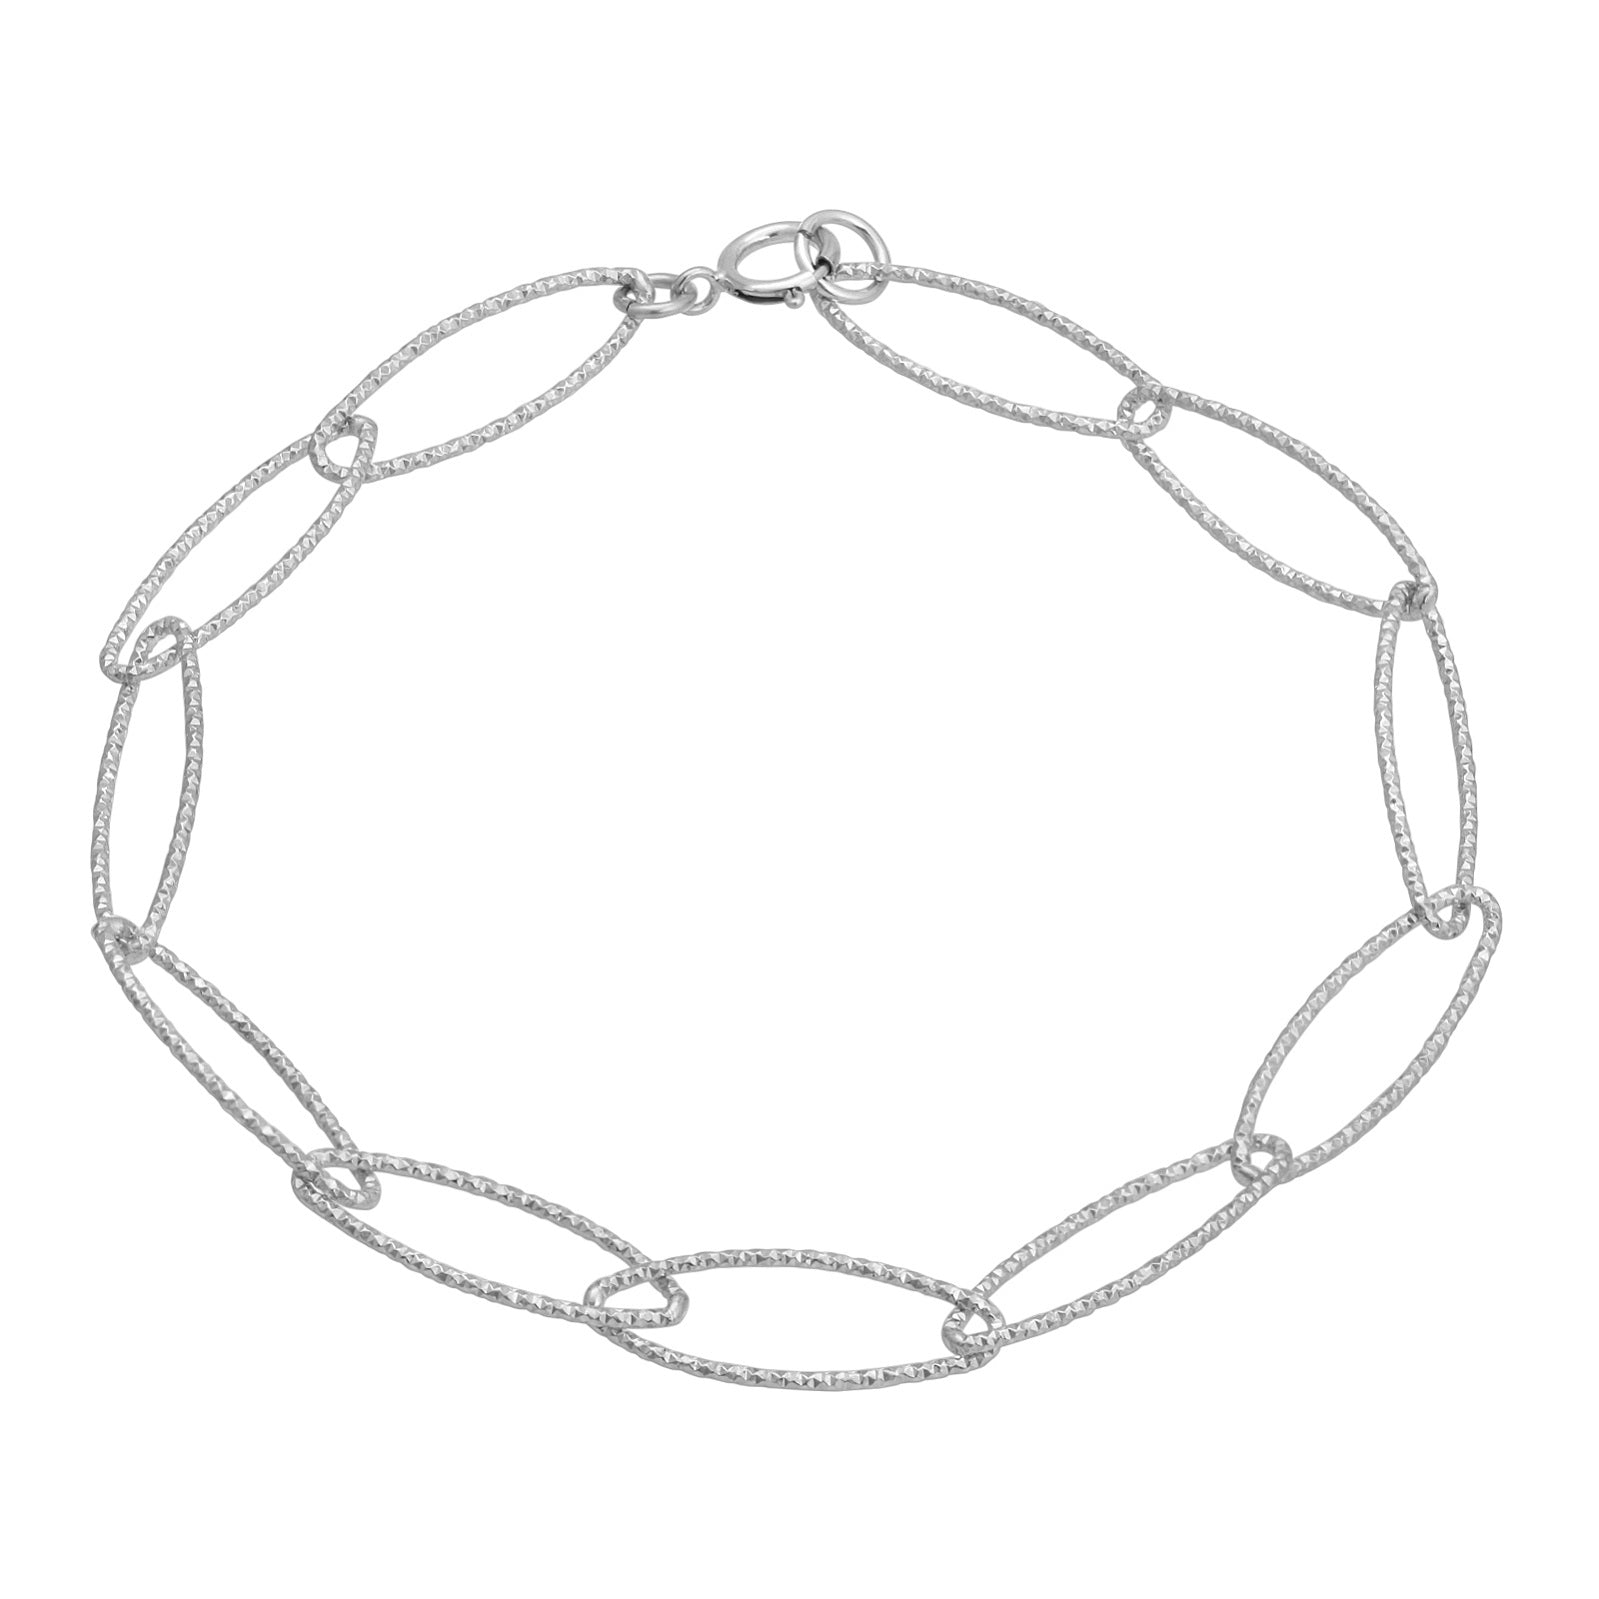 Oval Chain Link Diamond Cut Bracelet Hollywood